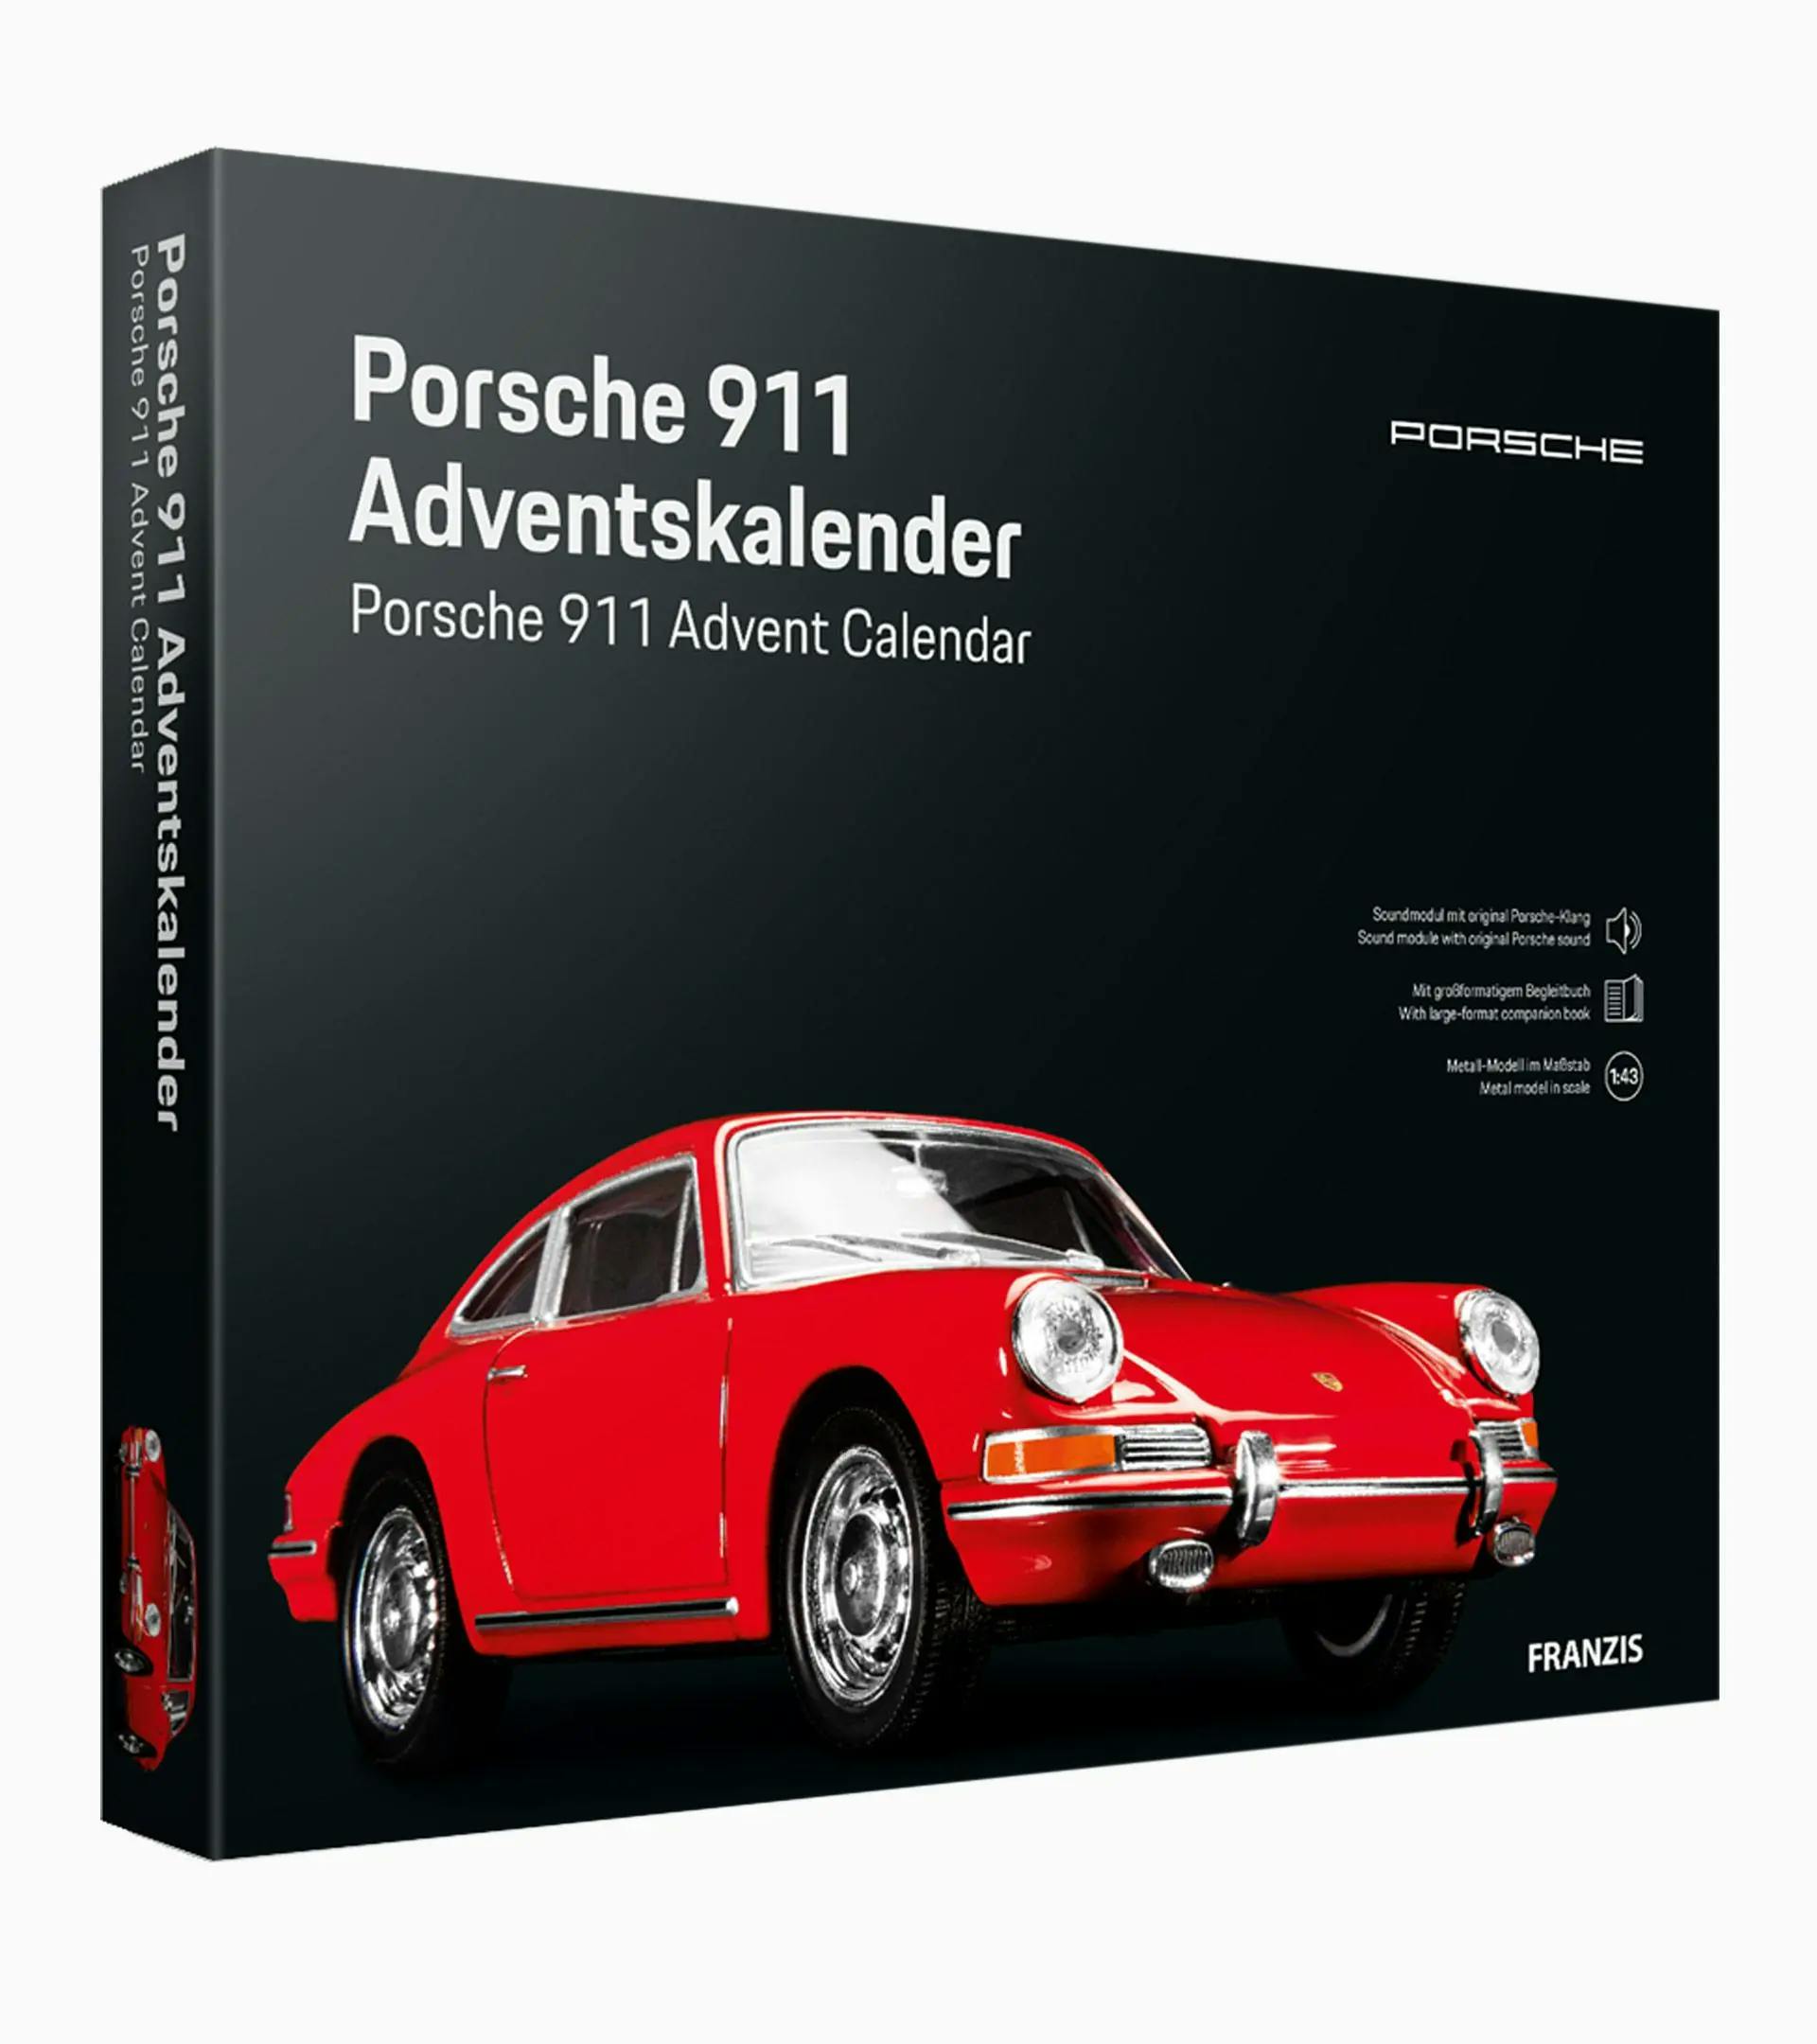 Porsche 911 Adventskalender 1